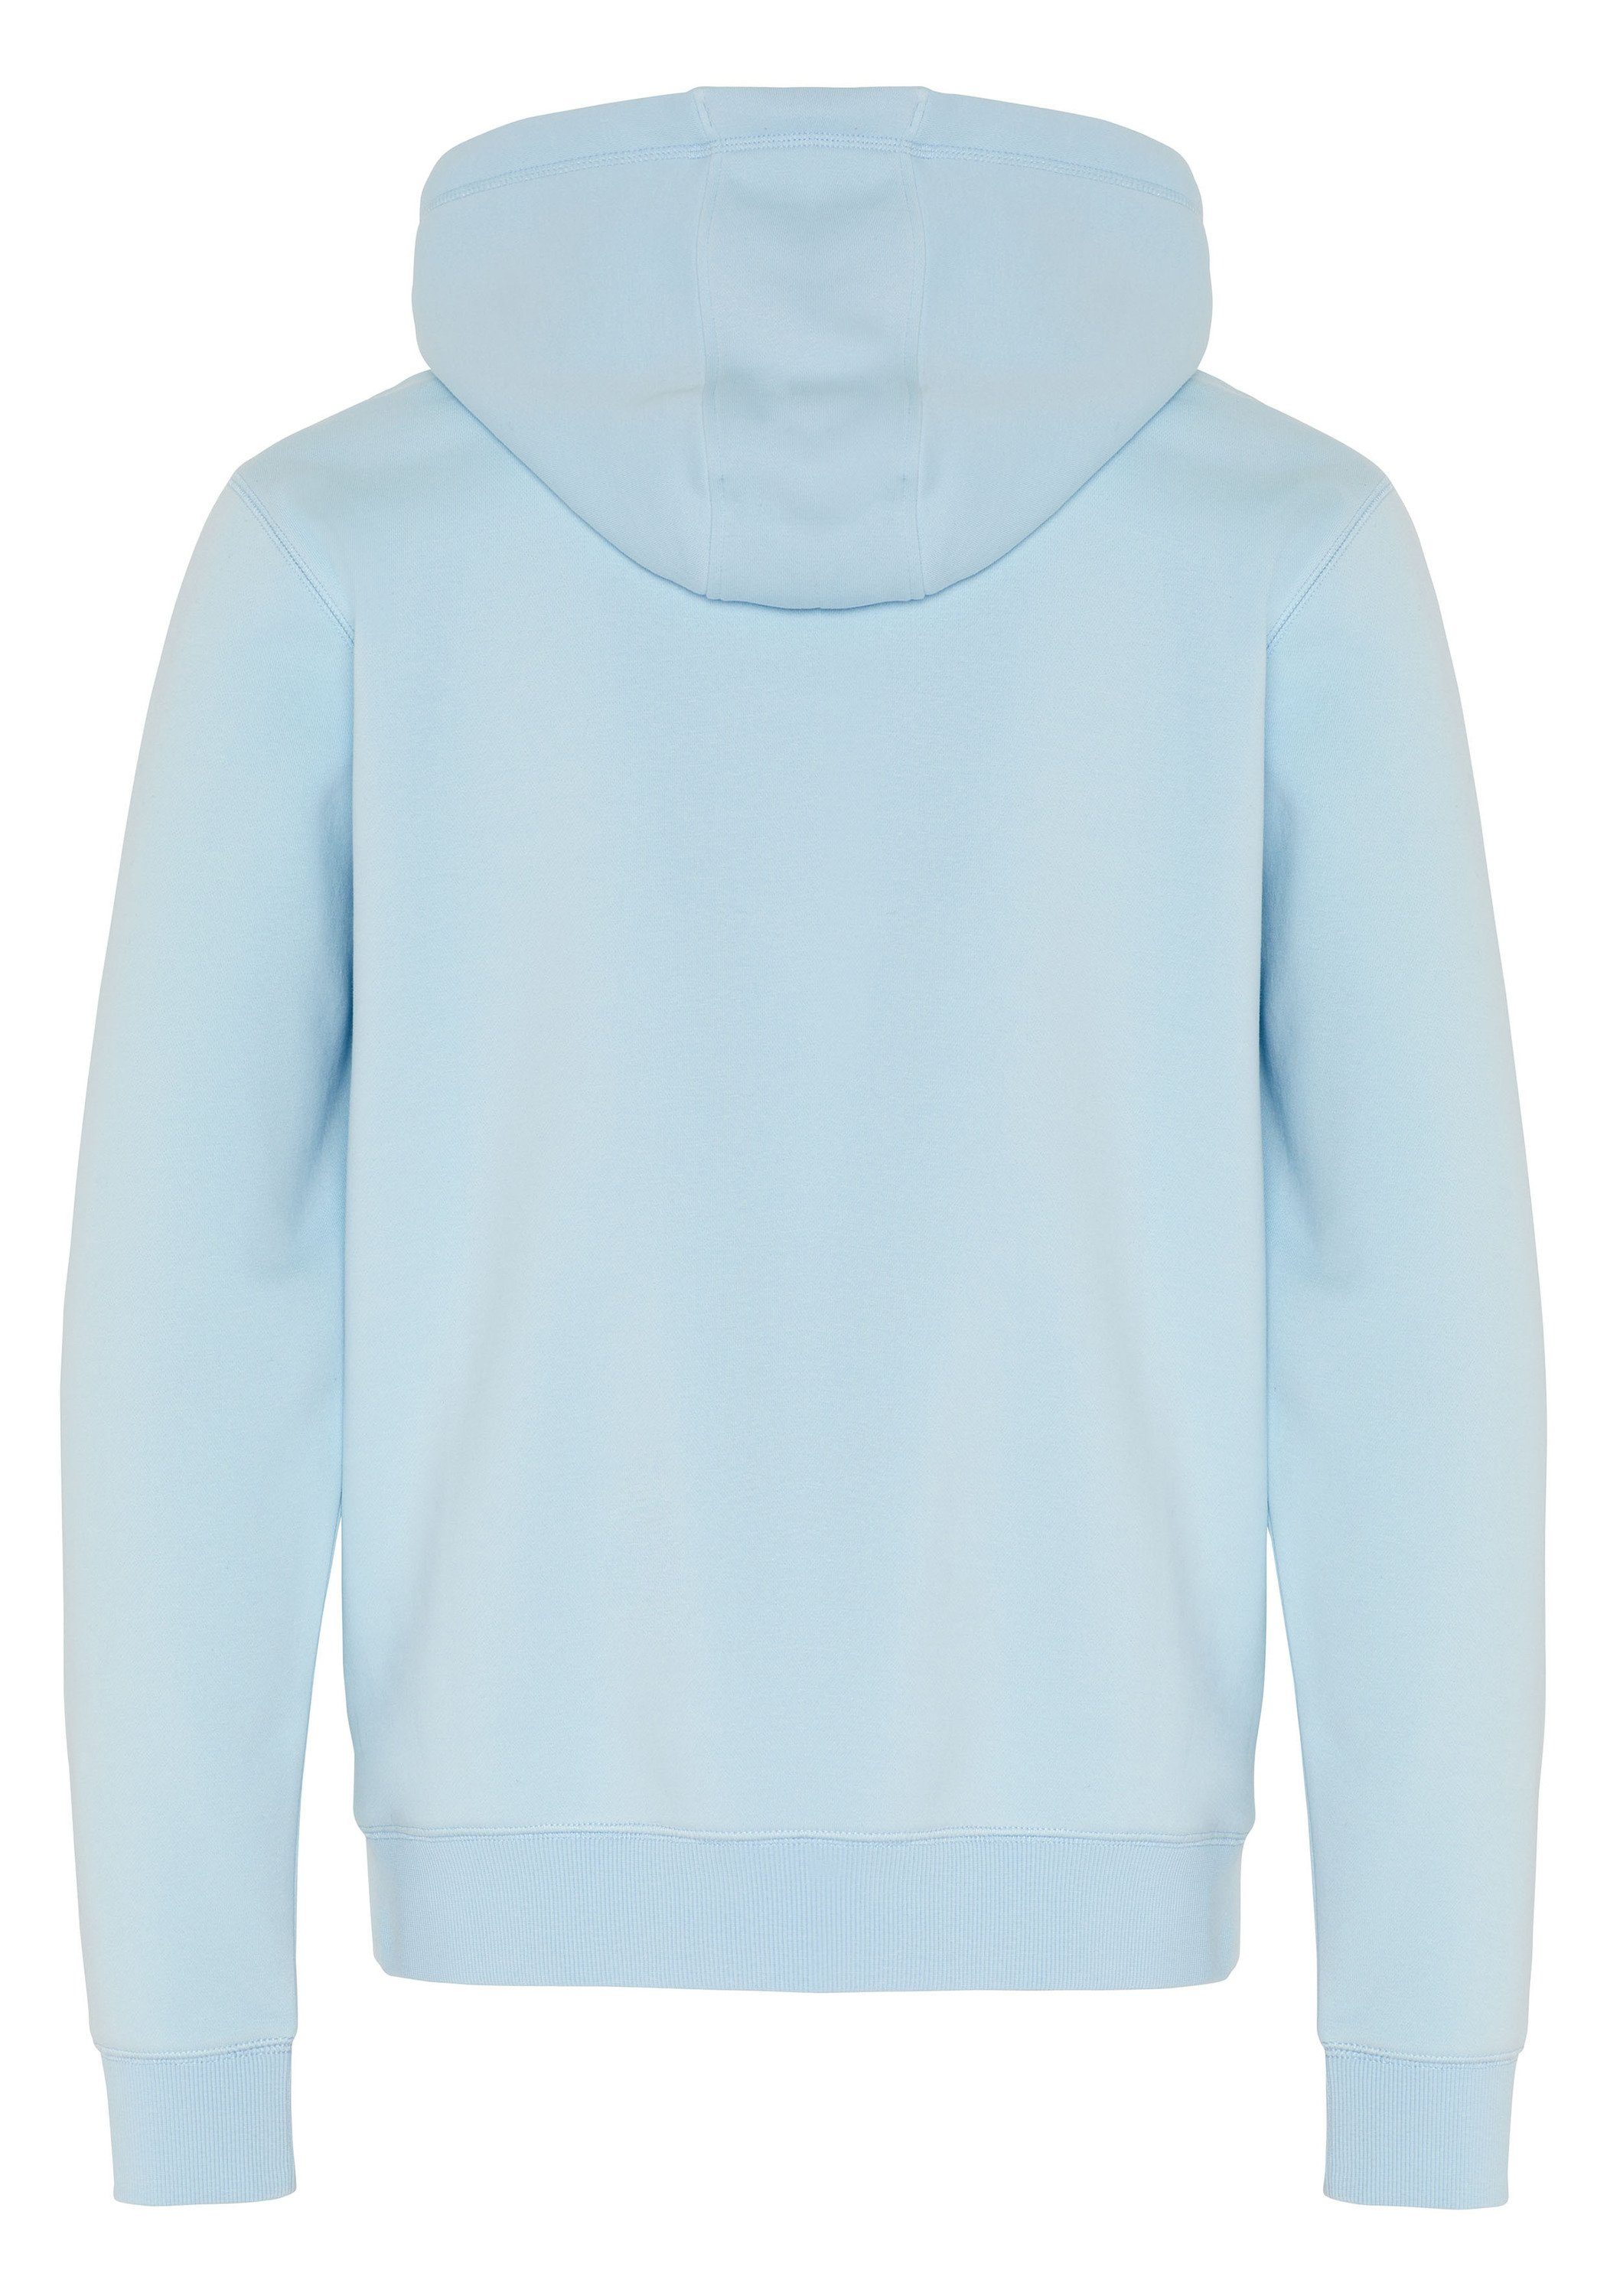 mittel aus blau Chiemsee Kapuzensweatshirt Hoodie mit Baumwollmix 1 respect-Print